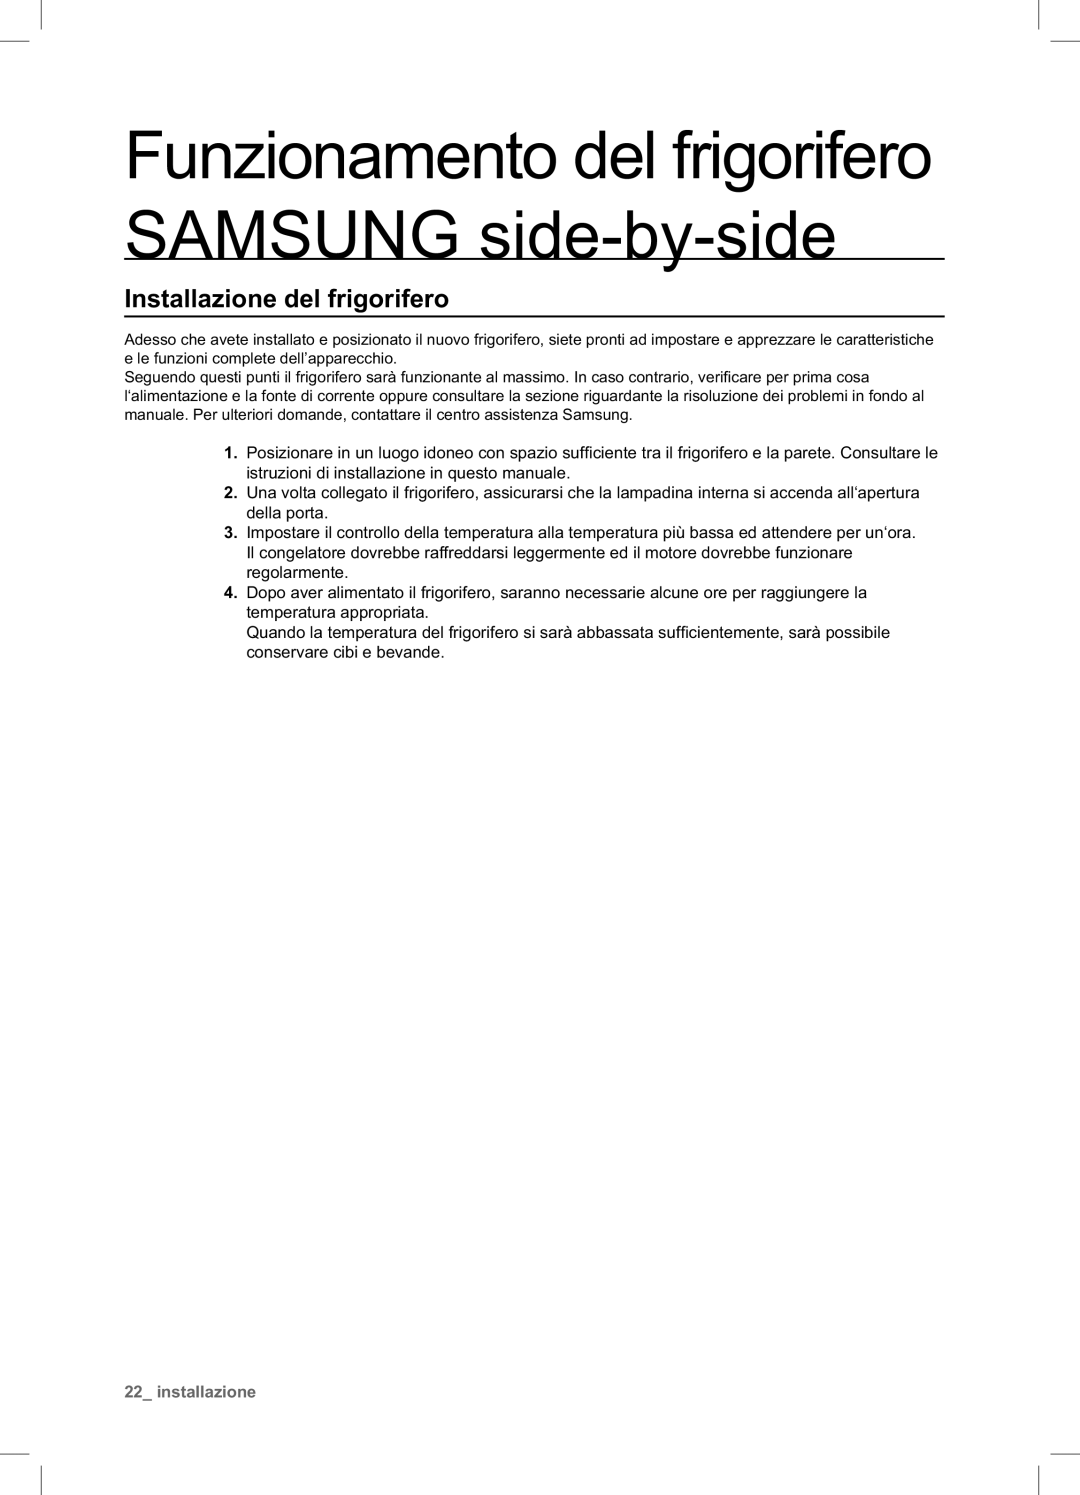 Samsung RSA1NTPE1/XES Funzionamento del frigorifero SAMSUNG side-by-side, Installazione del frigorifero, installazione 